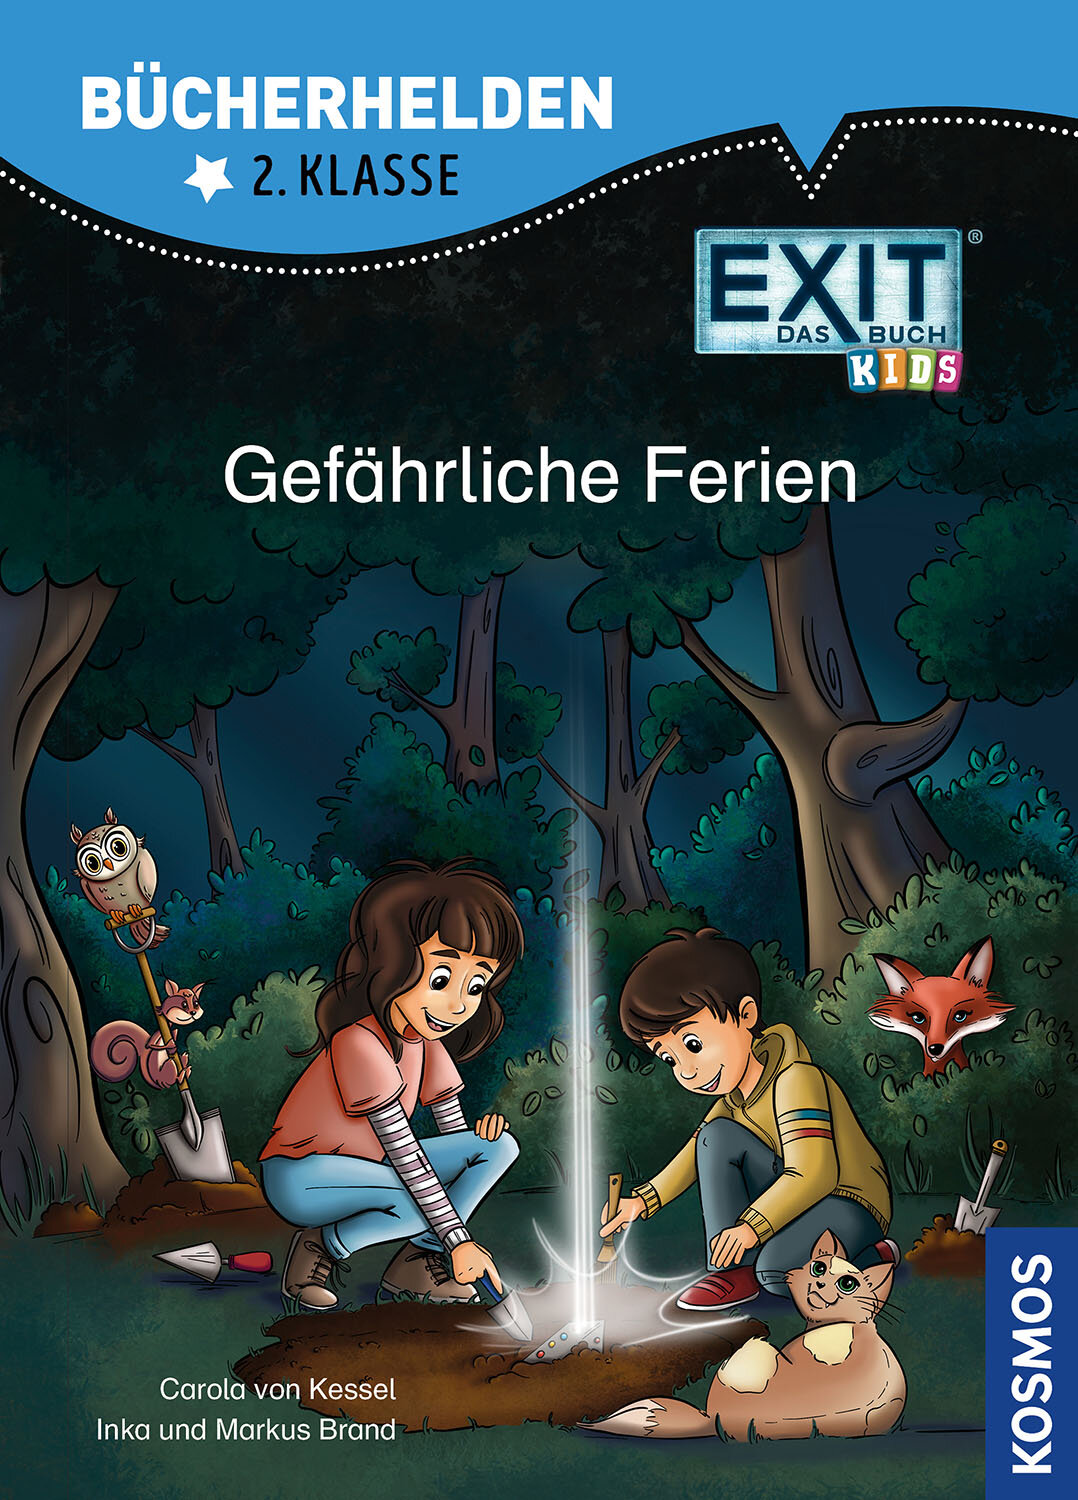 EXIT® - Das Buch Kids  Bücherhelden 2. Klasse  Gefährliche Ferien